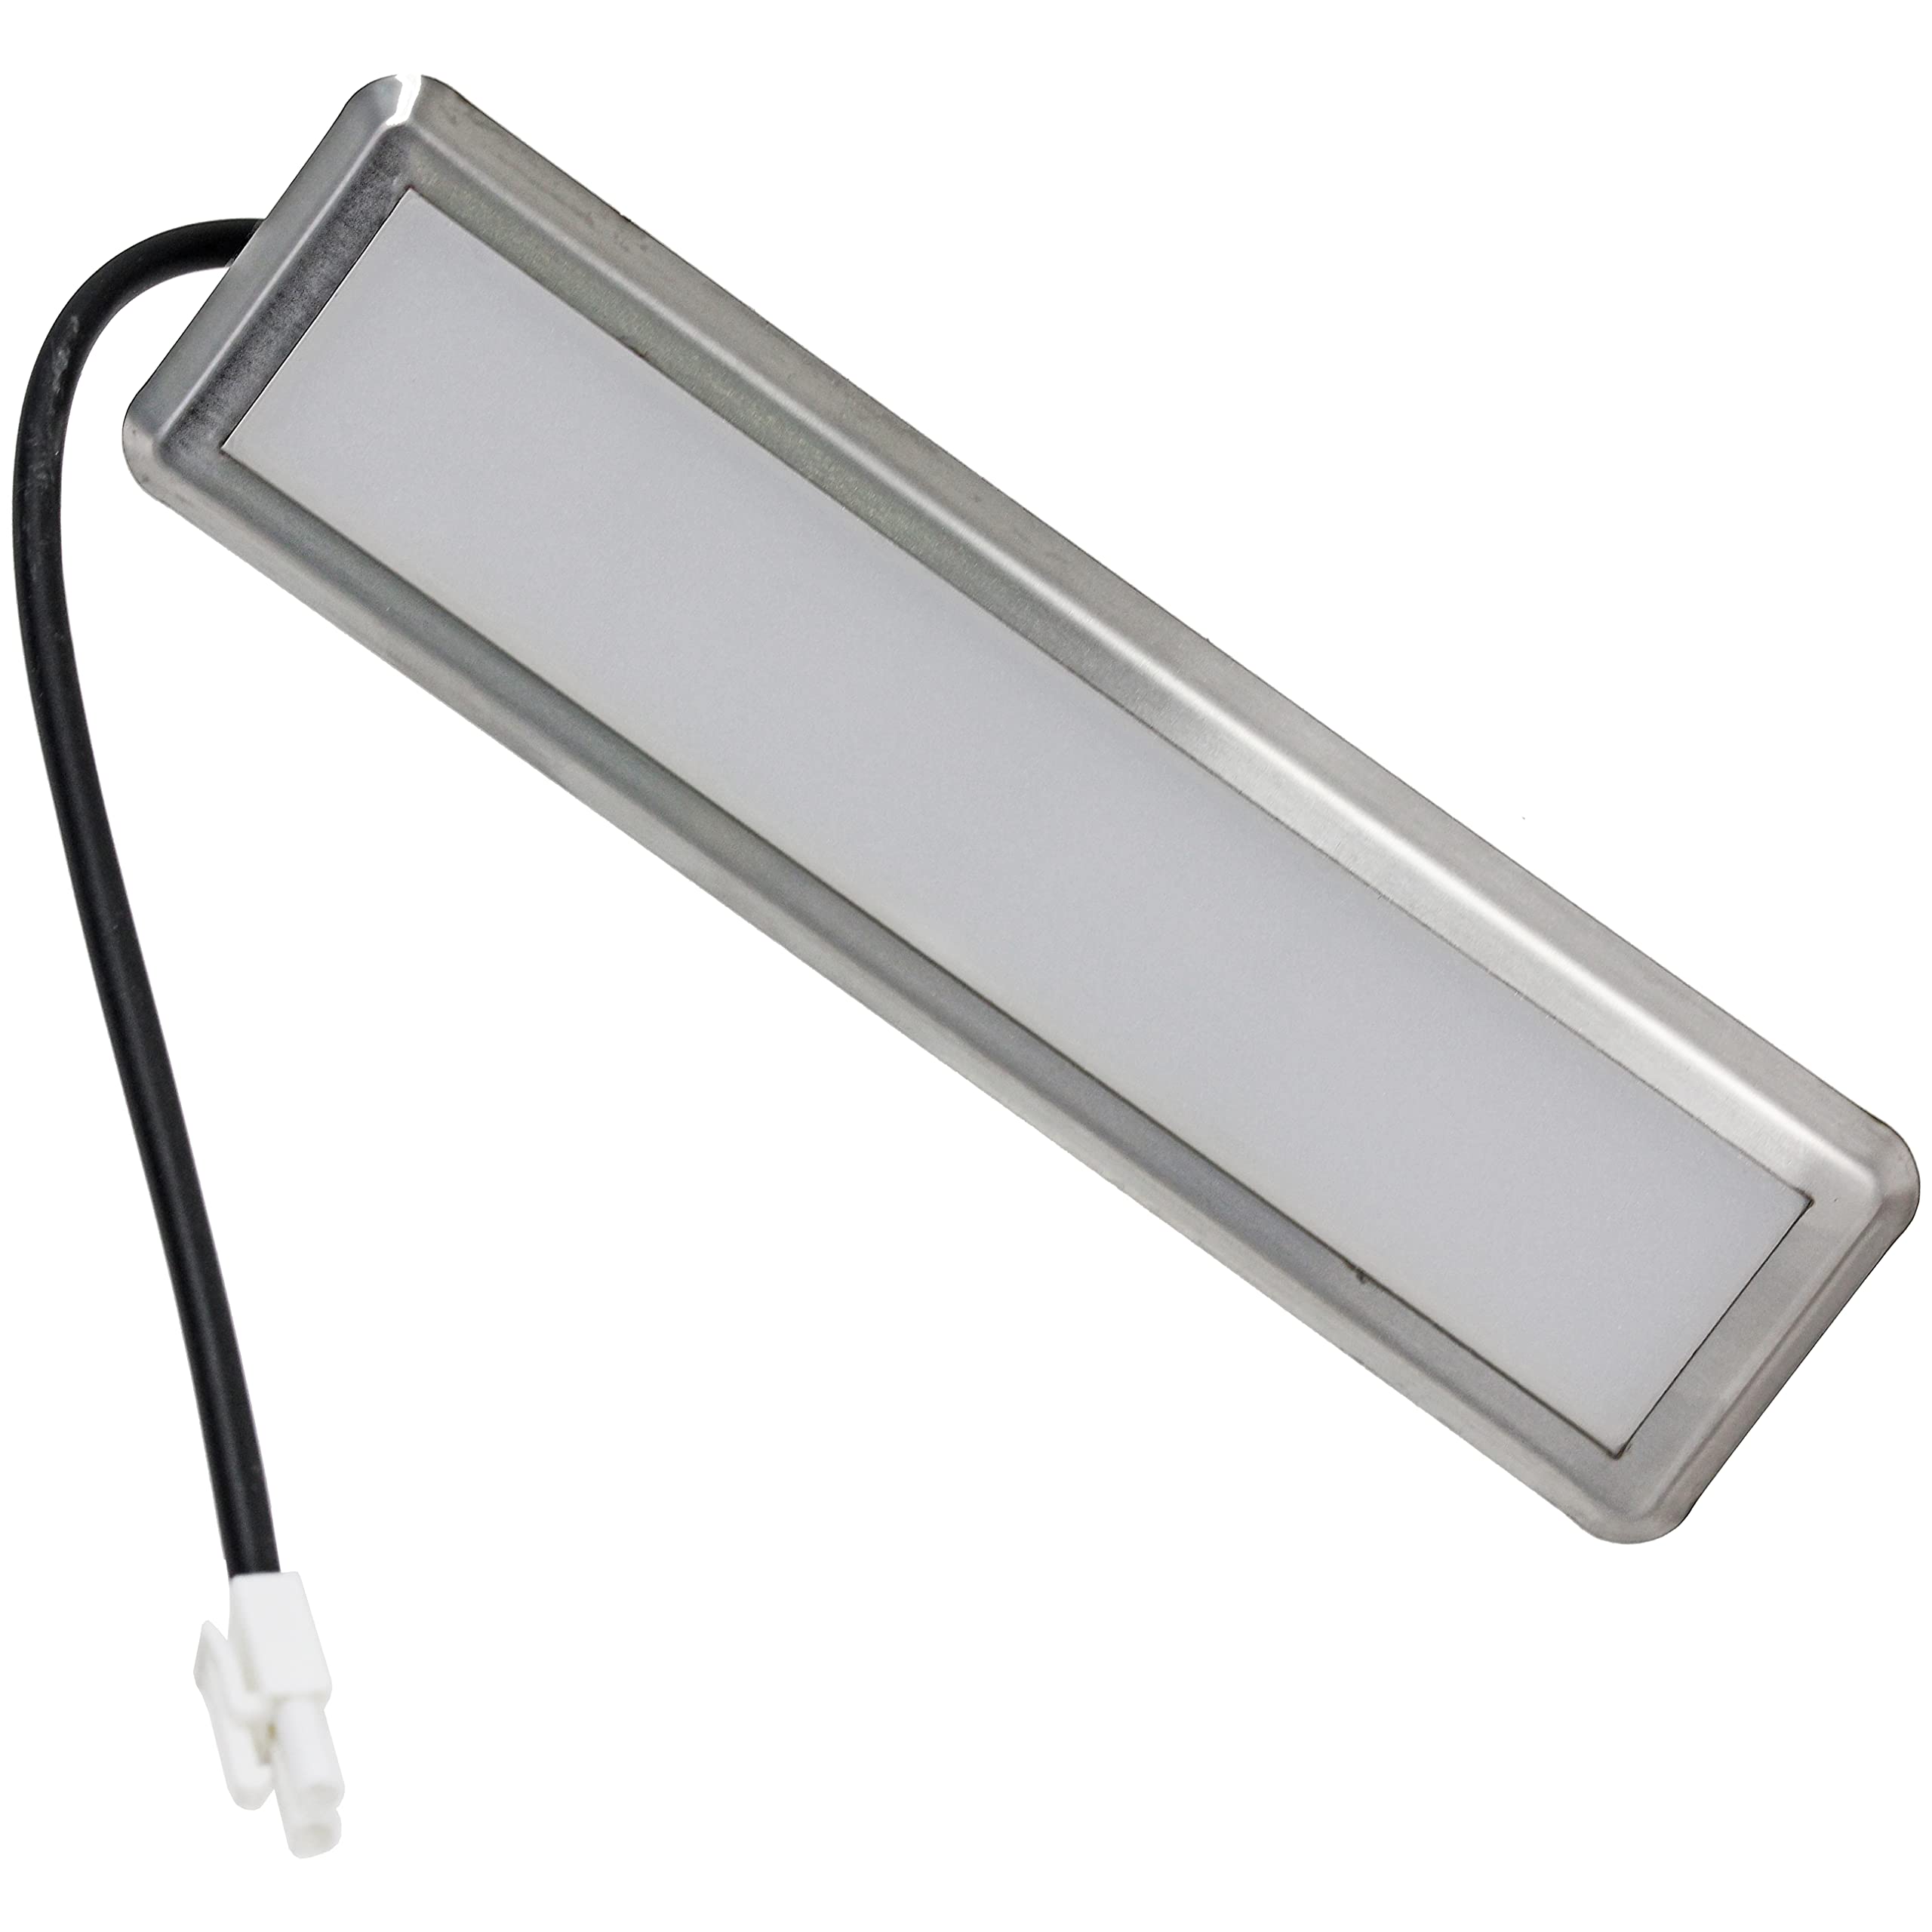 SPARES2GO LED-Lichtbox, kompatibel mit Currys Essentials Dunstabzugshaube C60SHDX17, Entlüftungsabzugshaube, 175 mm, 2,5 W